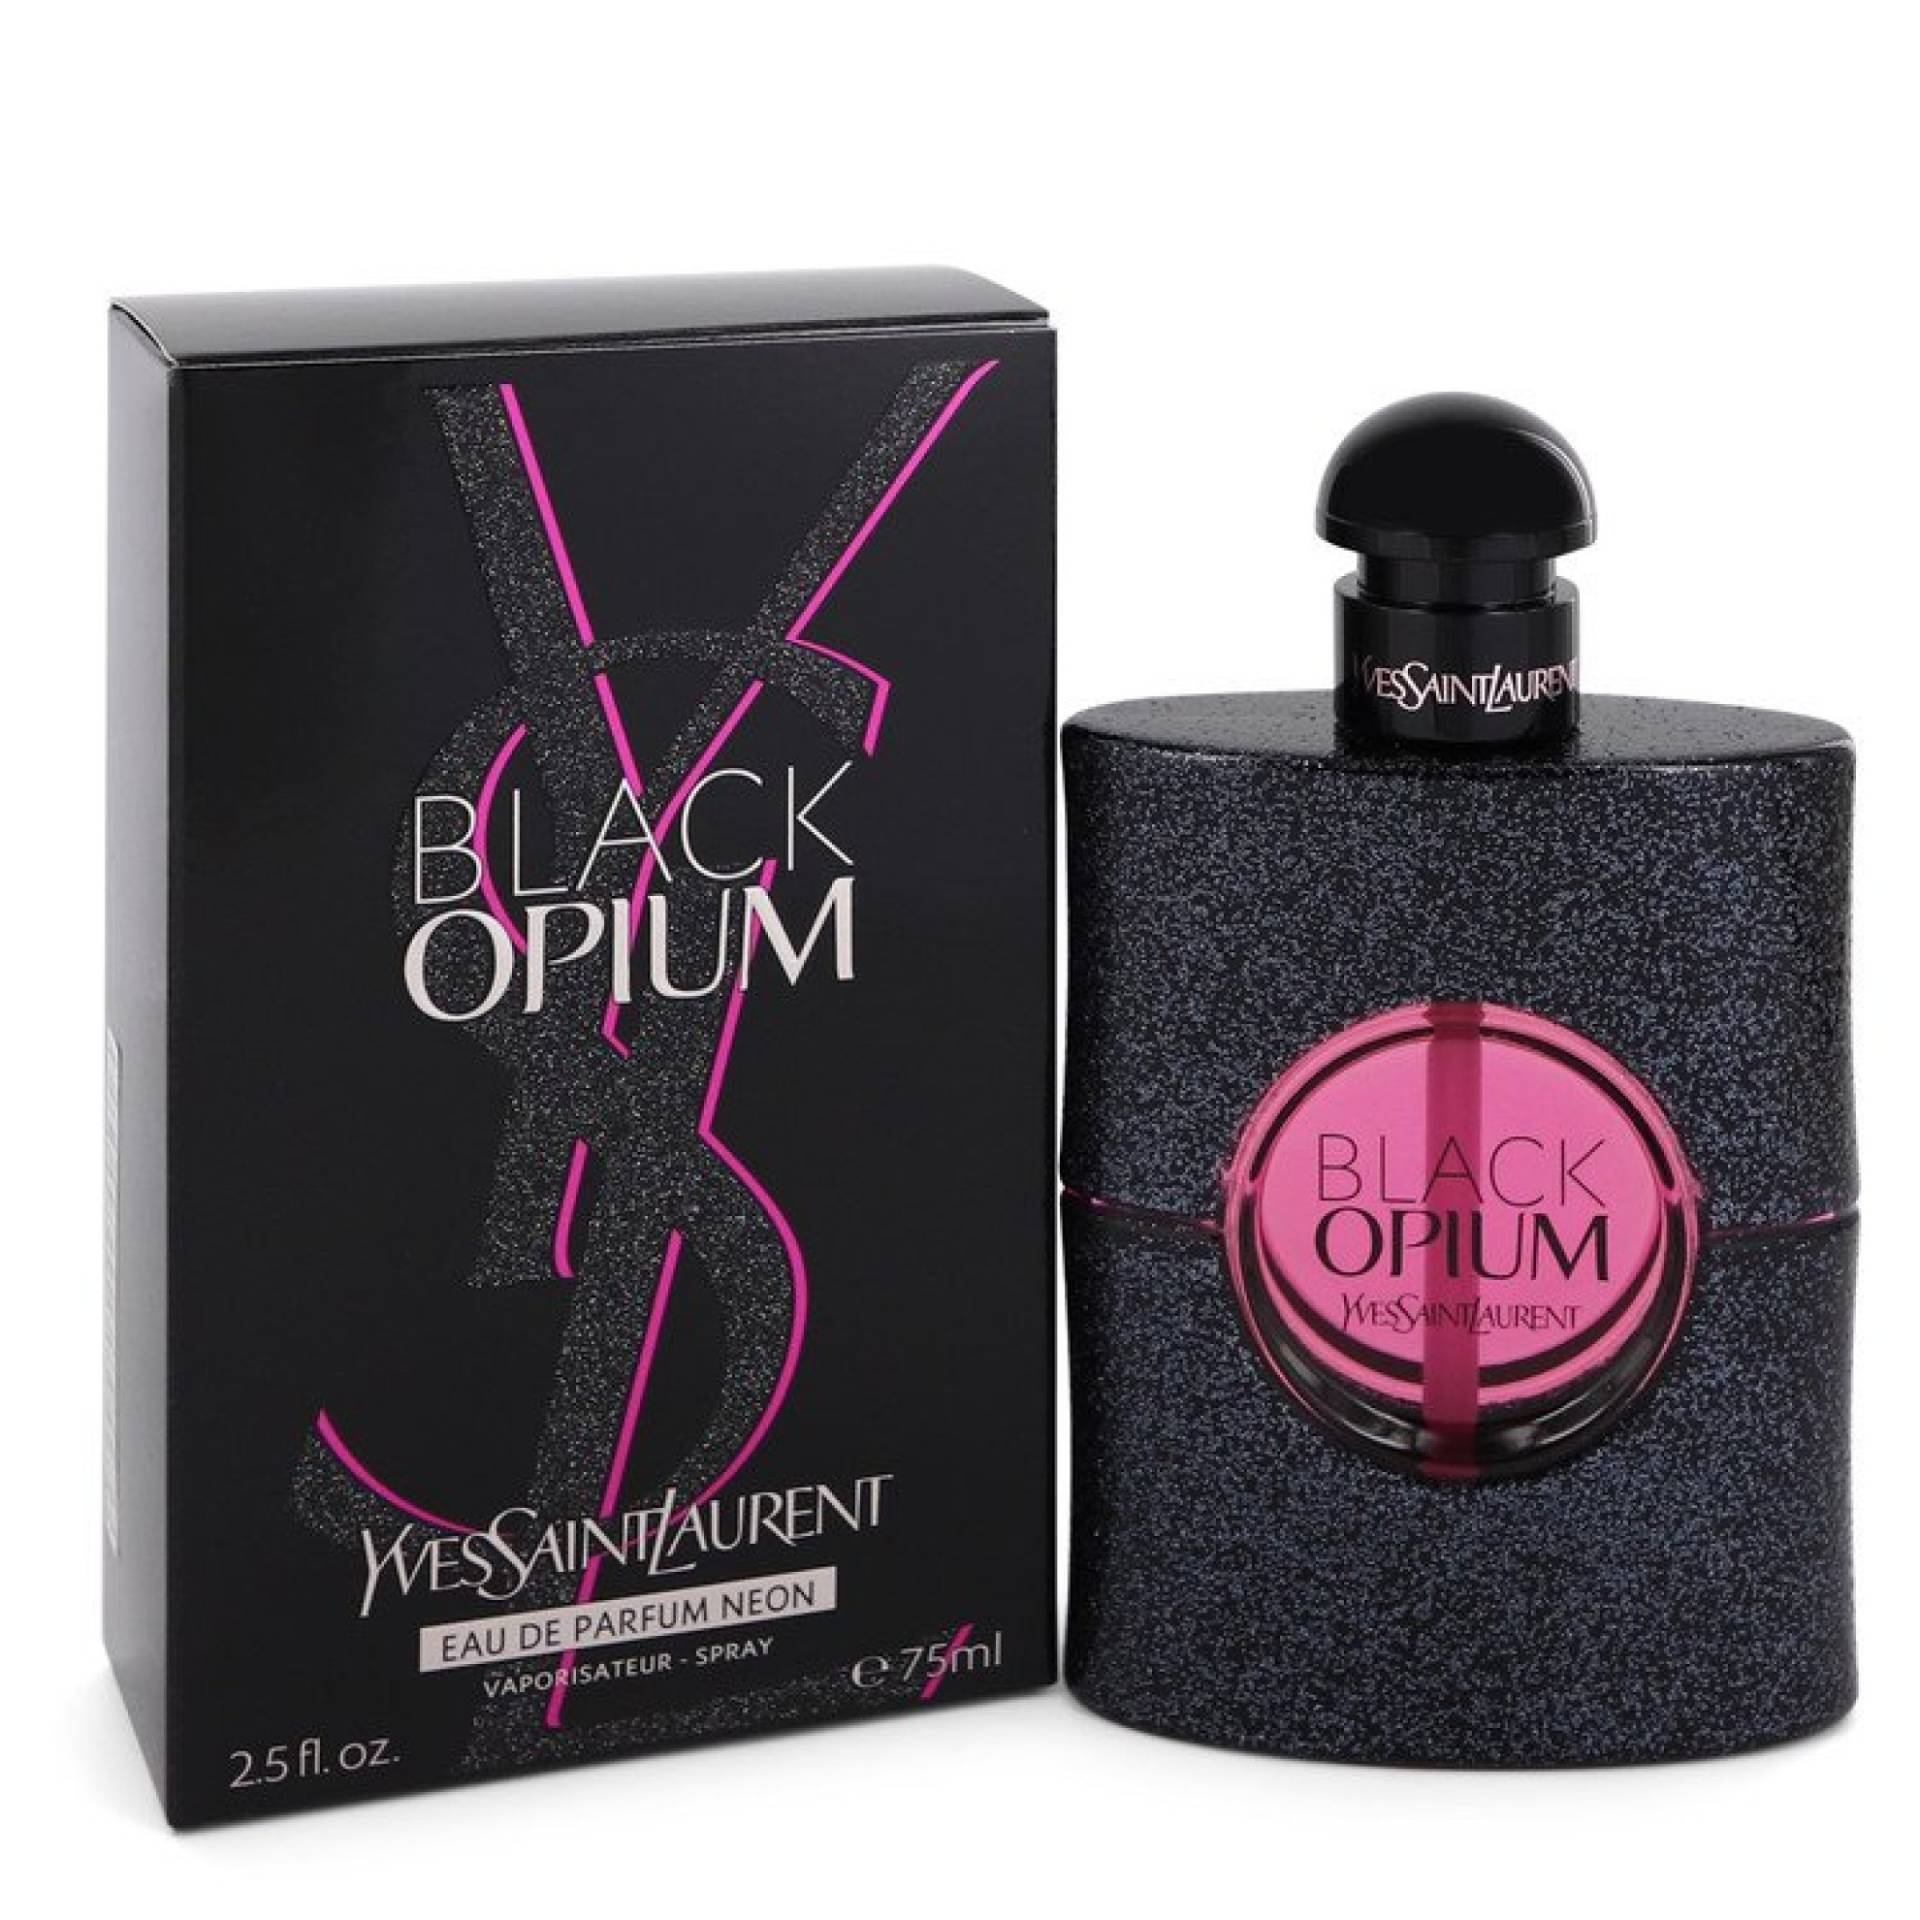 Yves Saint Laurent Black Opium Eau De Parfum Neon Spray 75 ml von Yves Saint Laurent